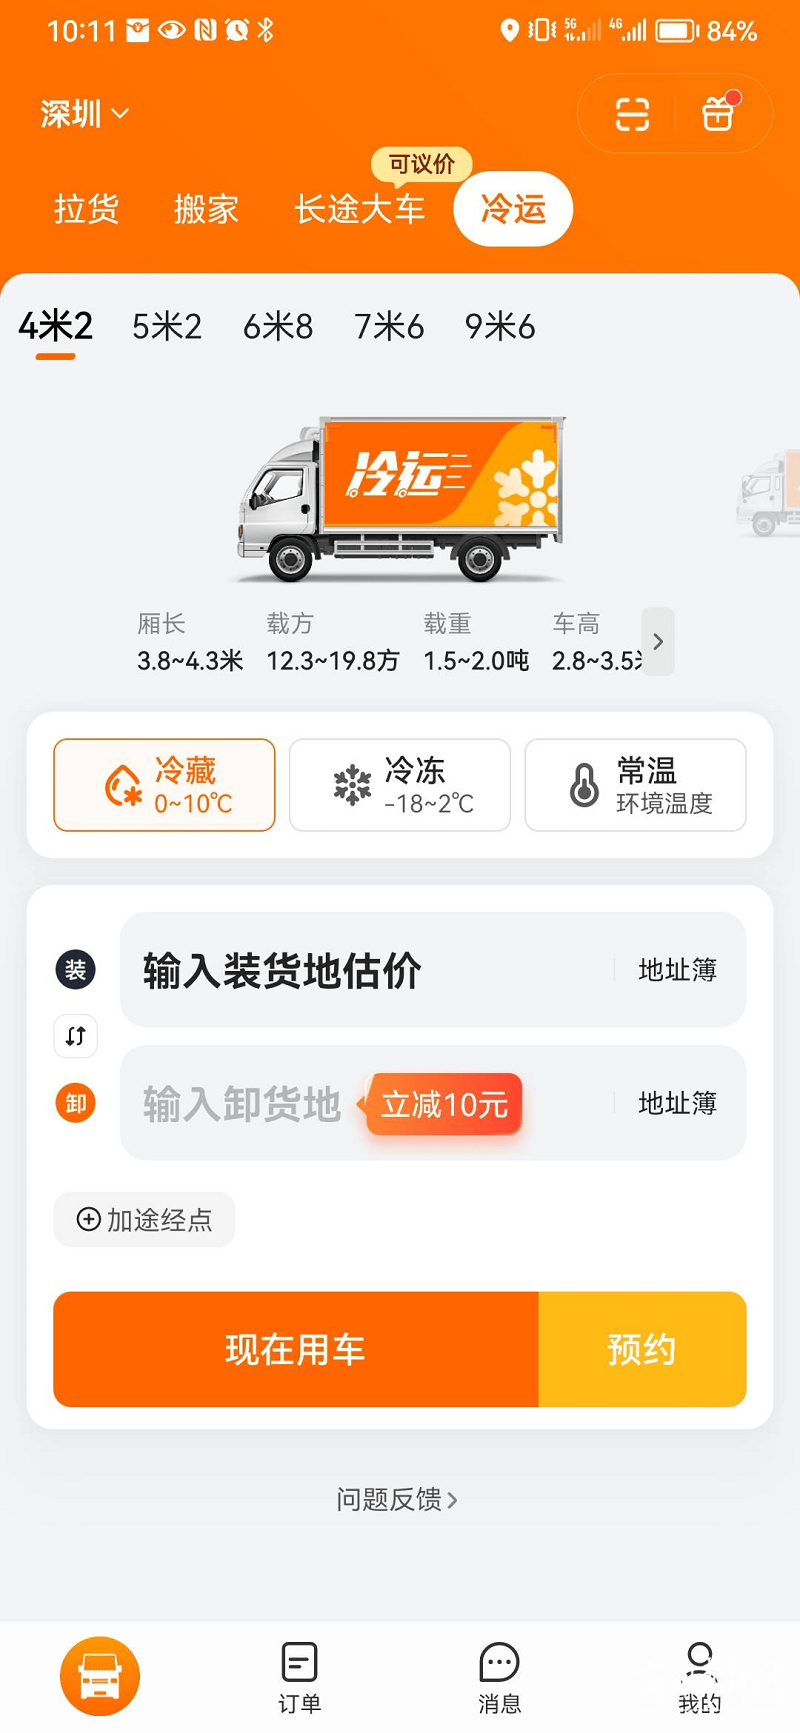 货拉拉正式在广州、深圳上线冷运服务